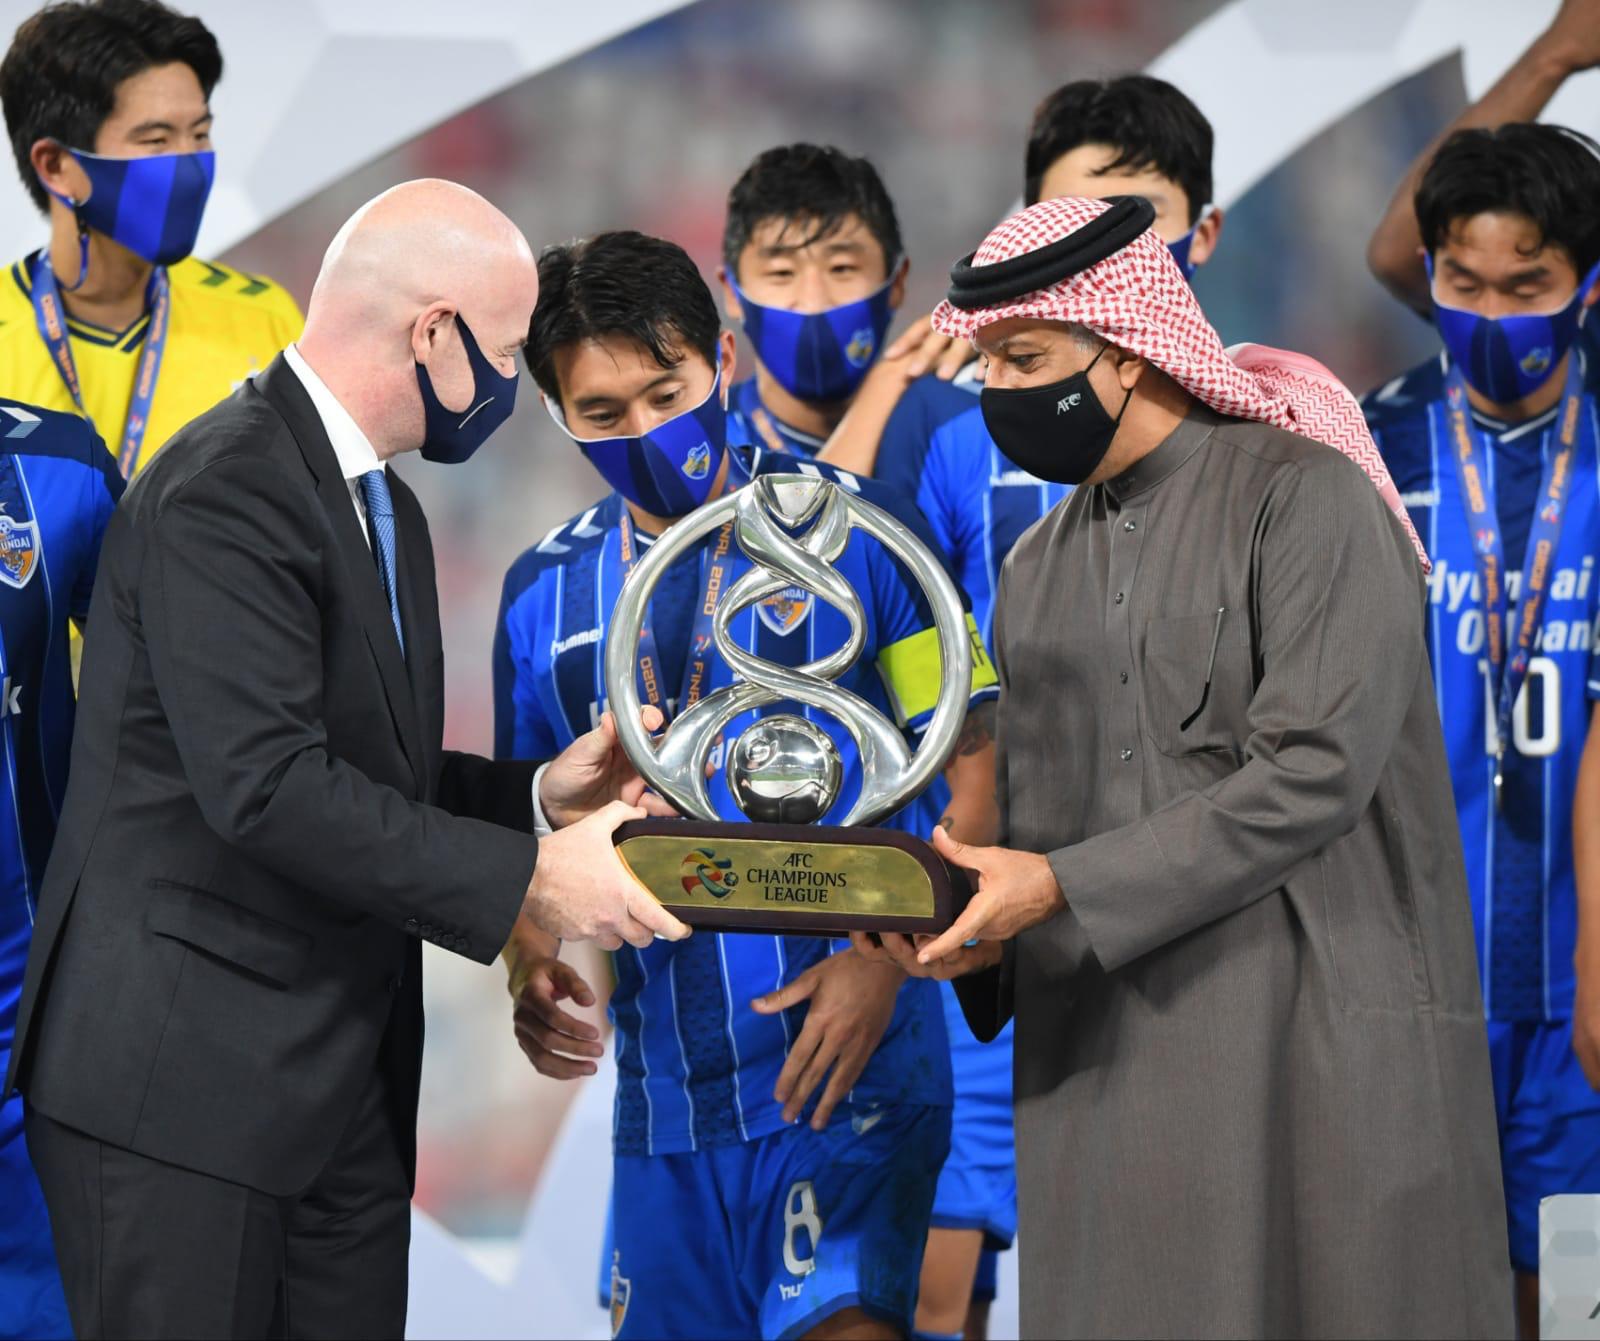 الشيخ سلمان بن ابراهيم *يشكر قطر على استضافة دوري ابطال اسيا*